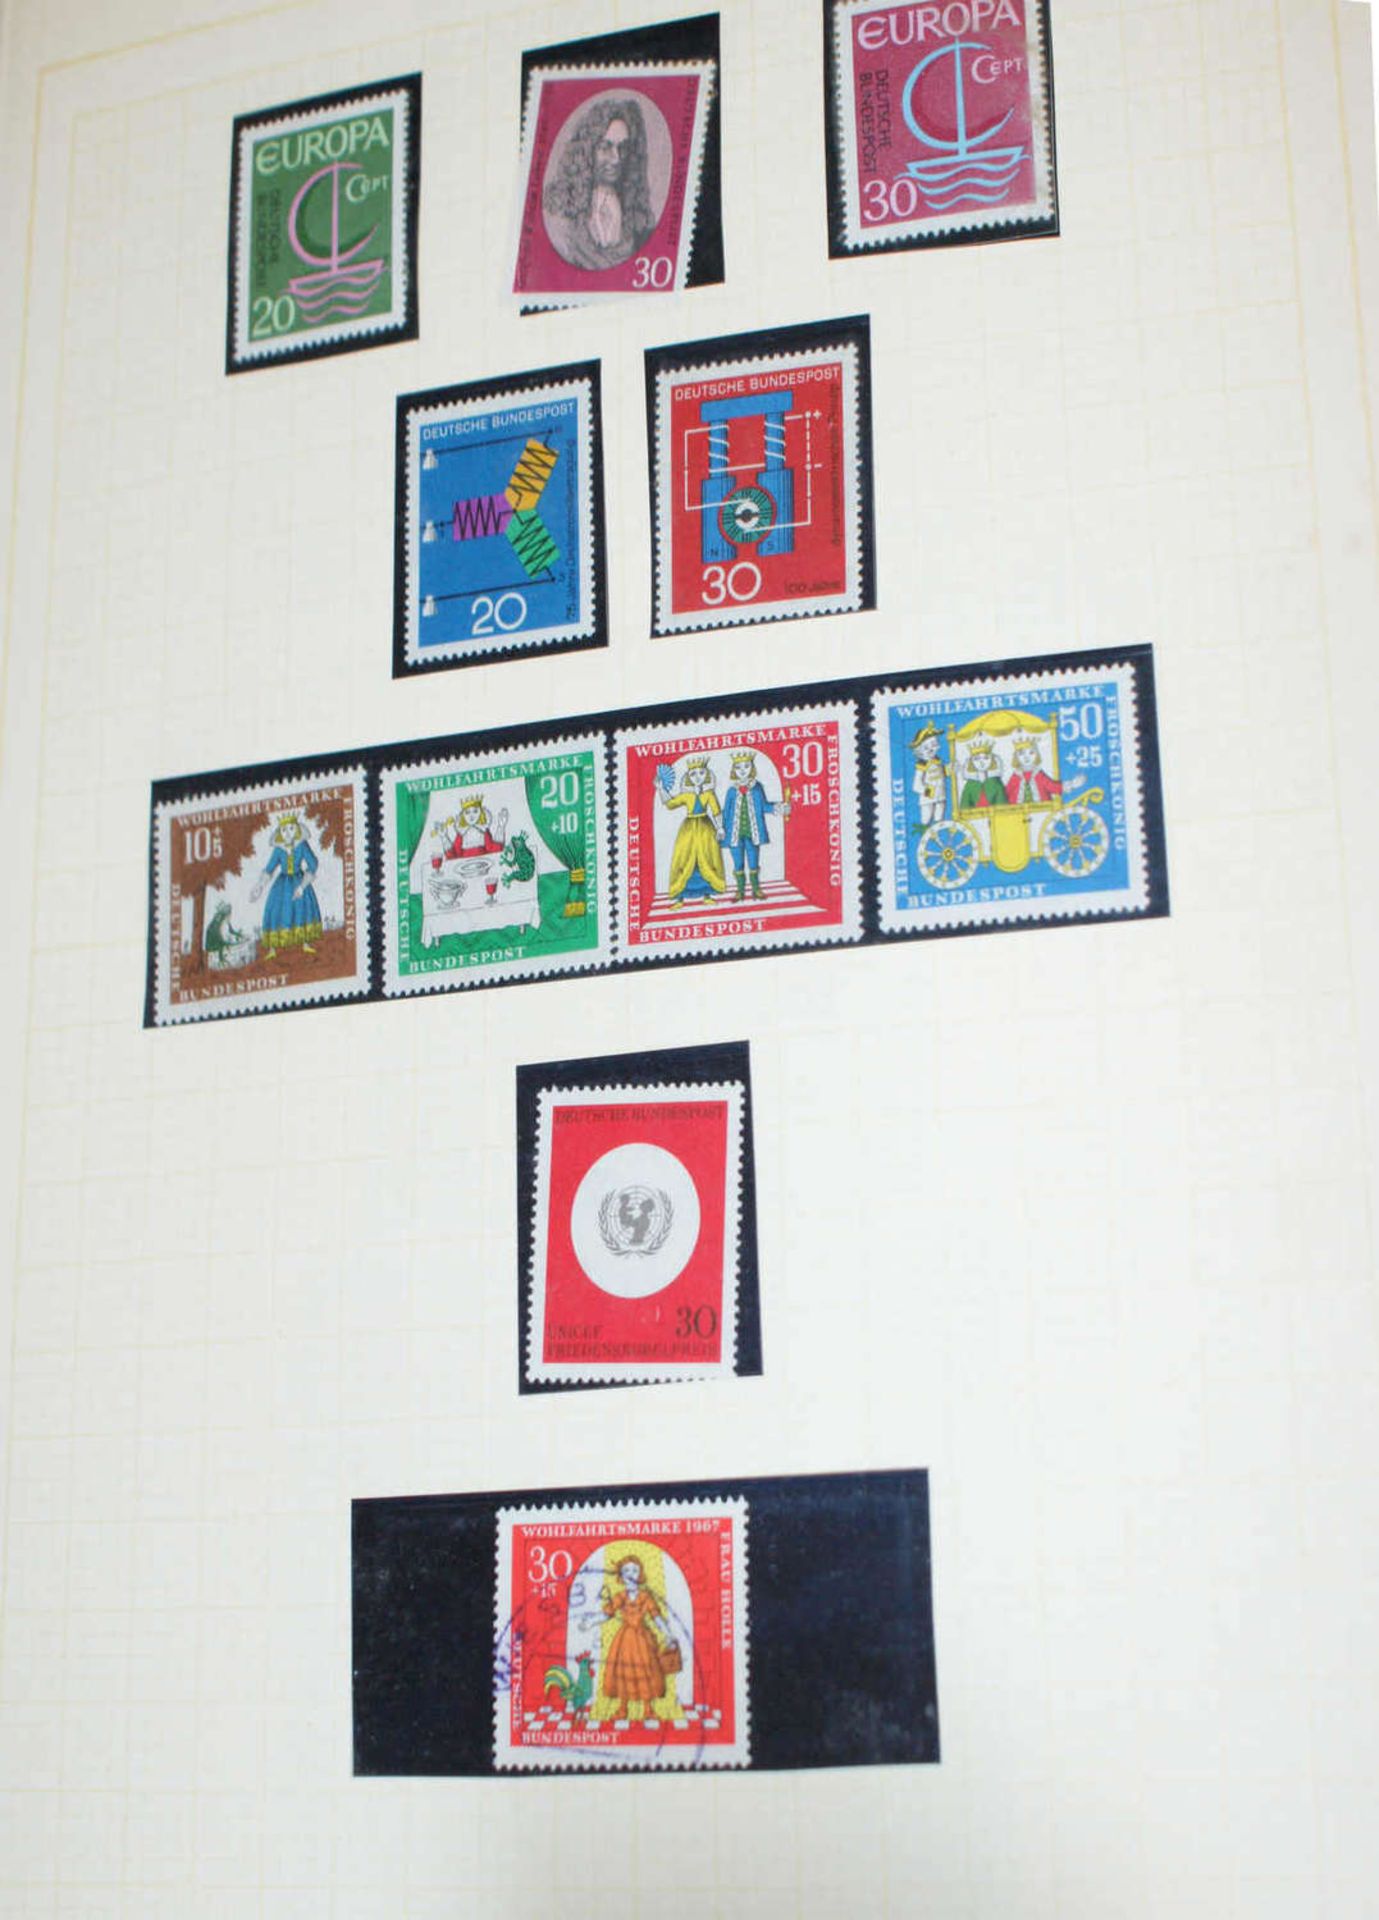 BRD - Briefmarken Dubletten Konvolut, bestehend aus 20 Alben, teilweise schlecht gelagert. - Image 5 of 6